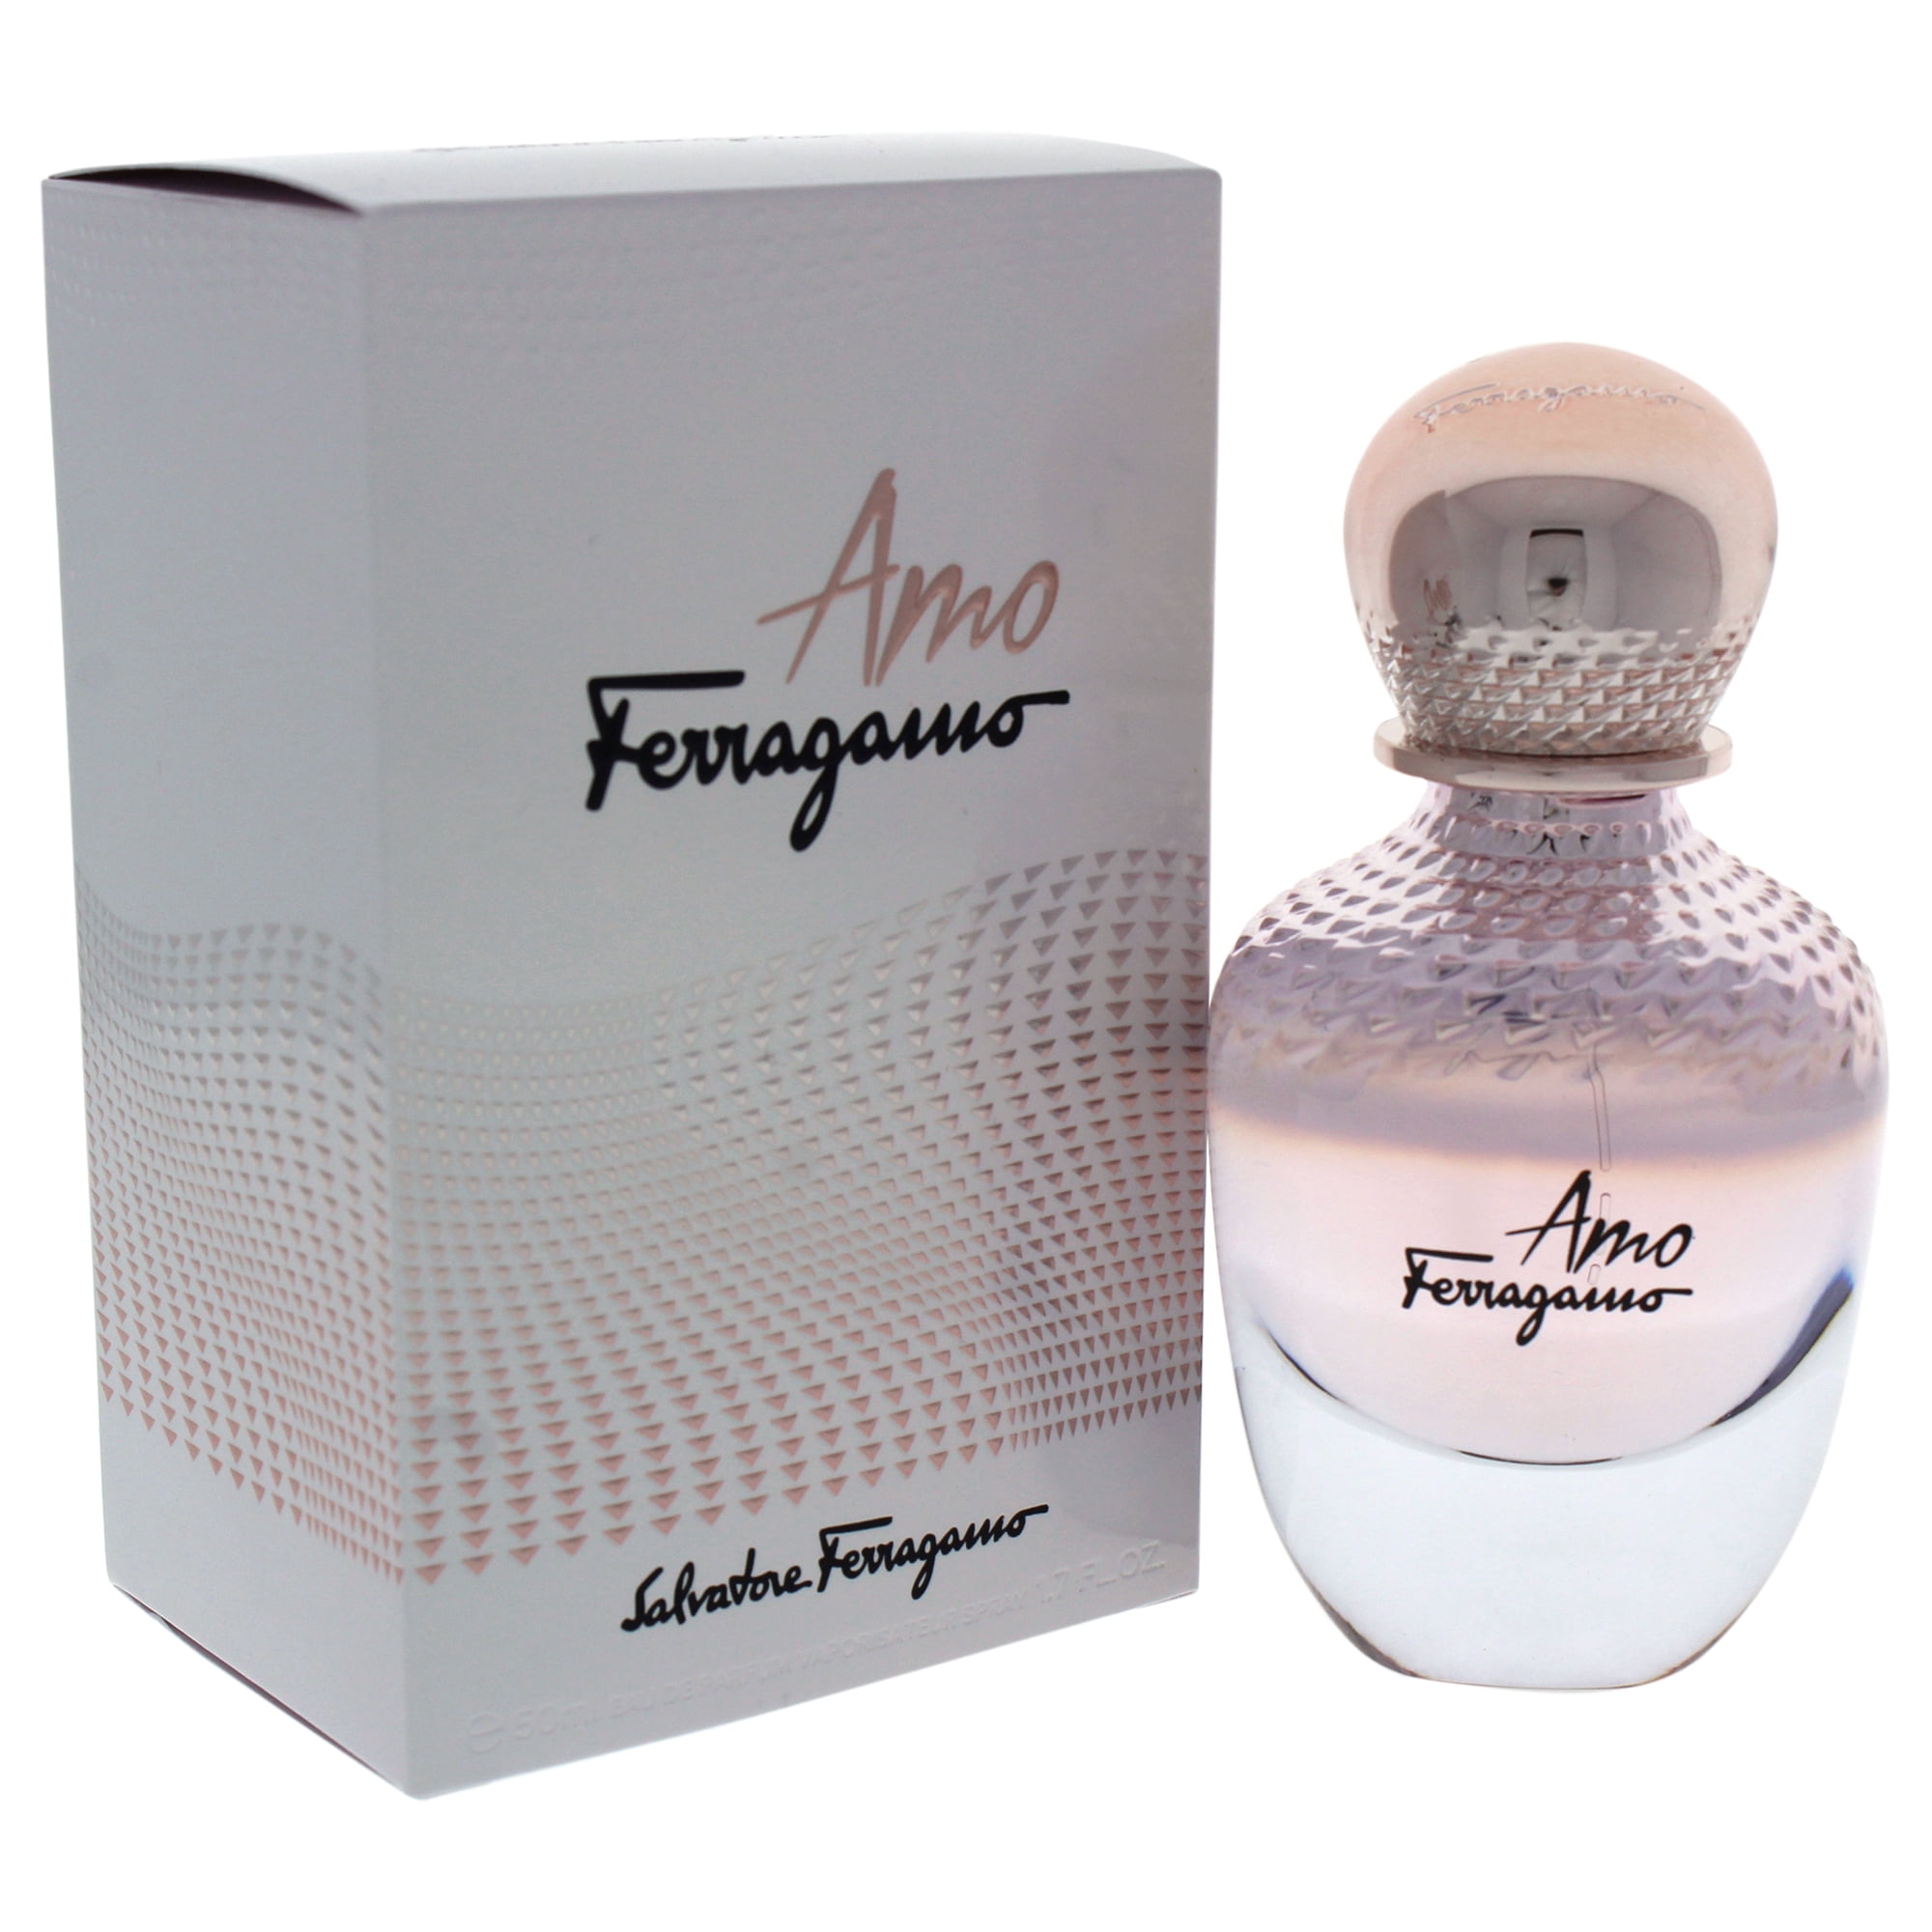 Amo Ferragamo Perfume by Salvatore Ferragamo 1.7 oz.EDP Spray.New in Sealed  Box.